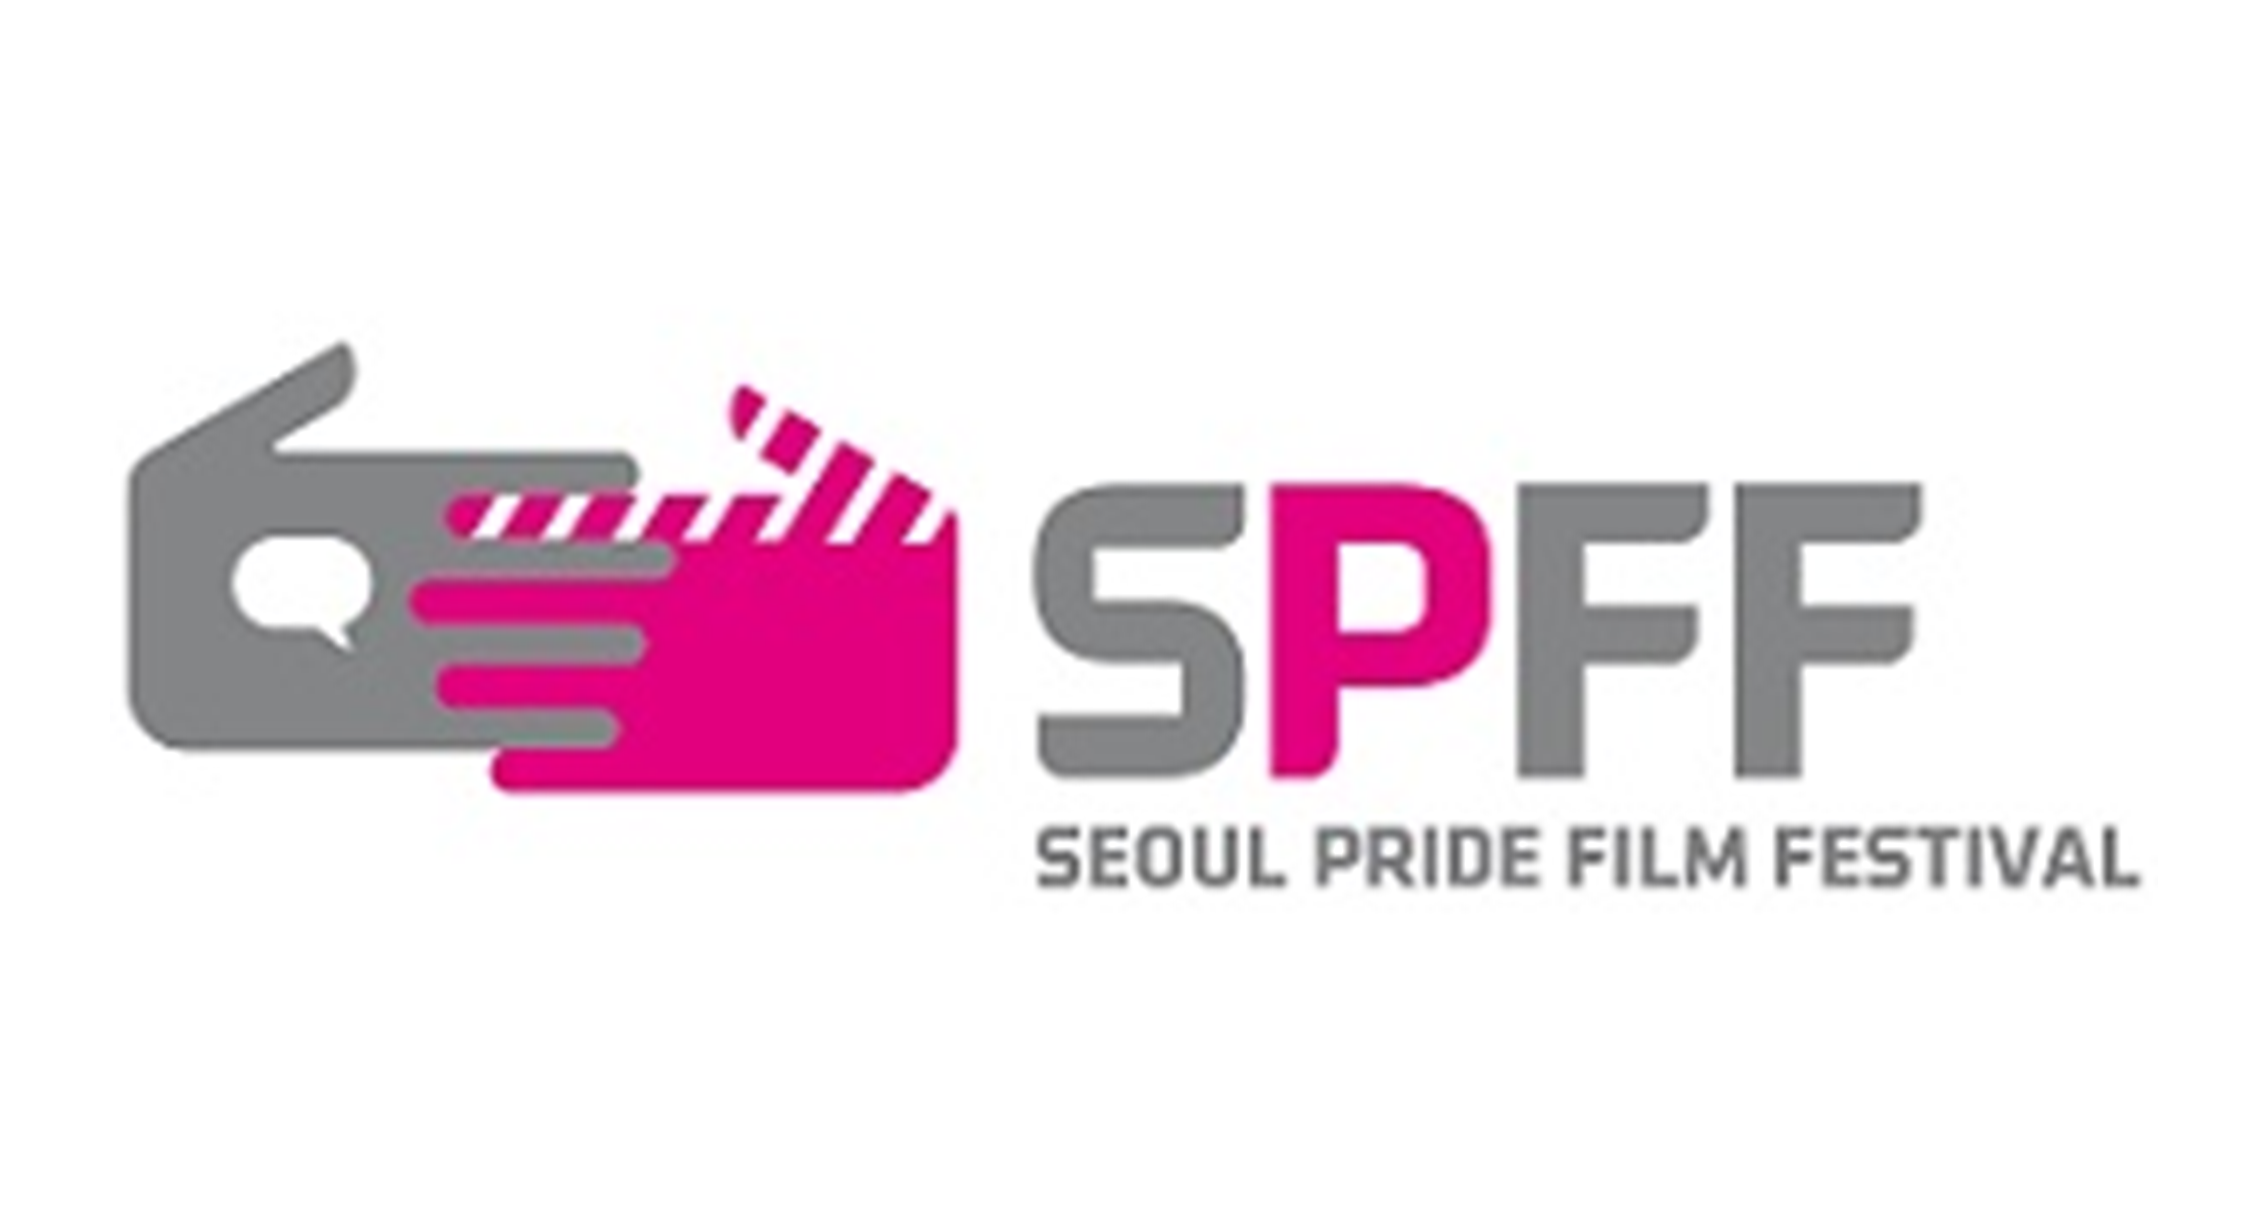 首尔骄傲影展 Seoul Pride Film Festival